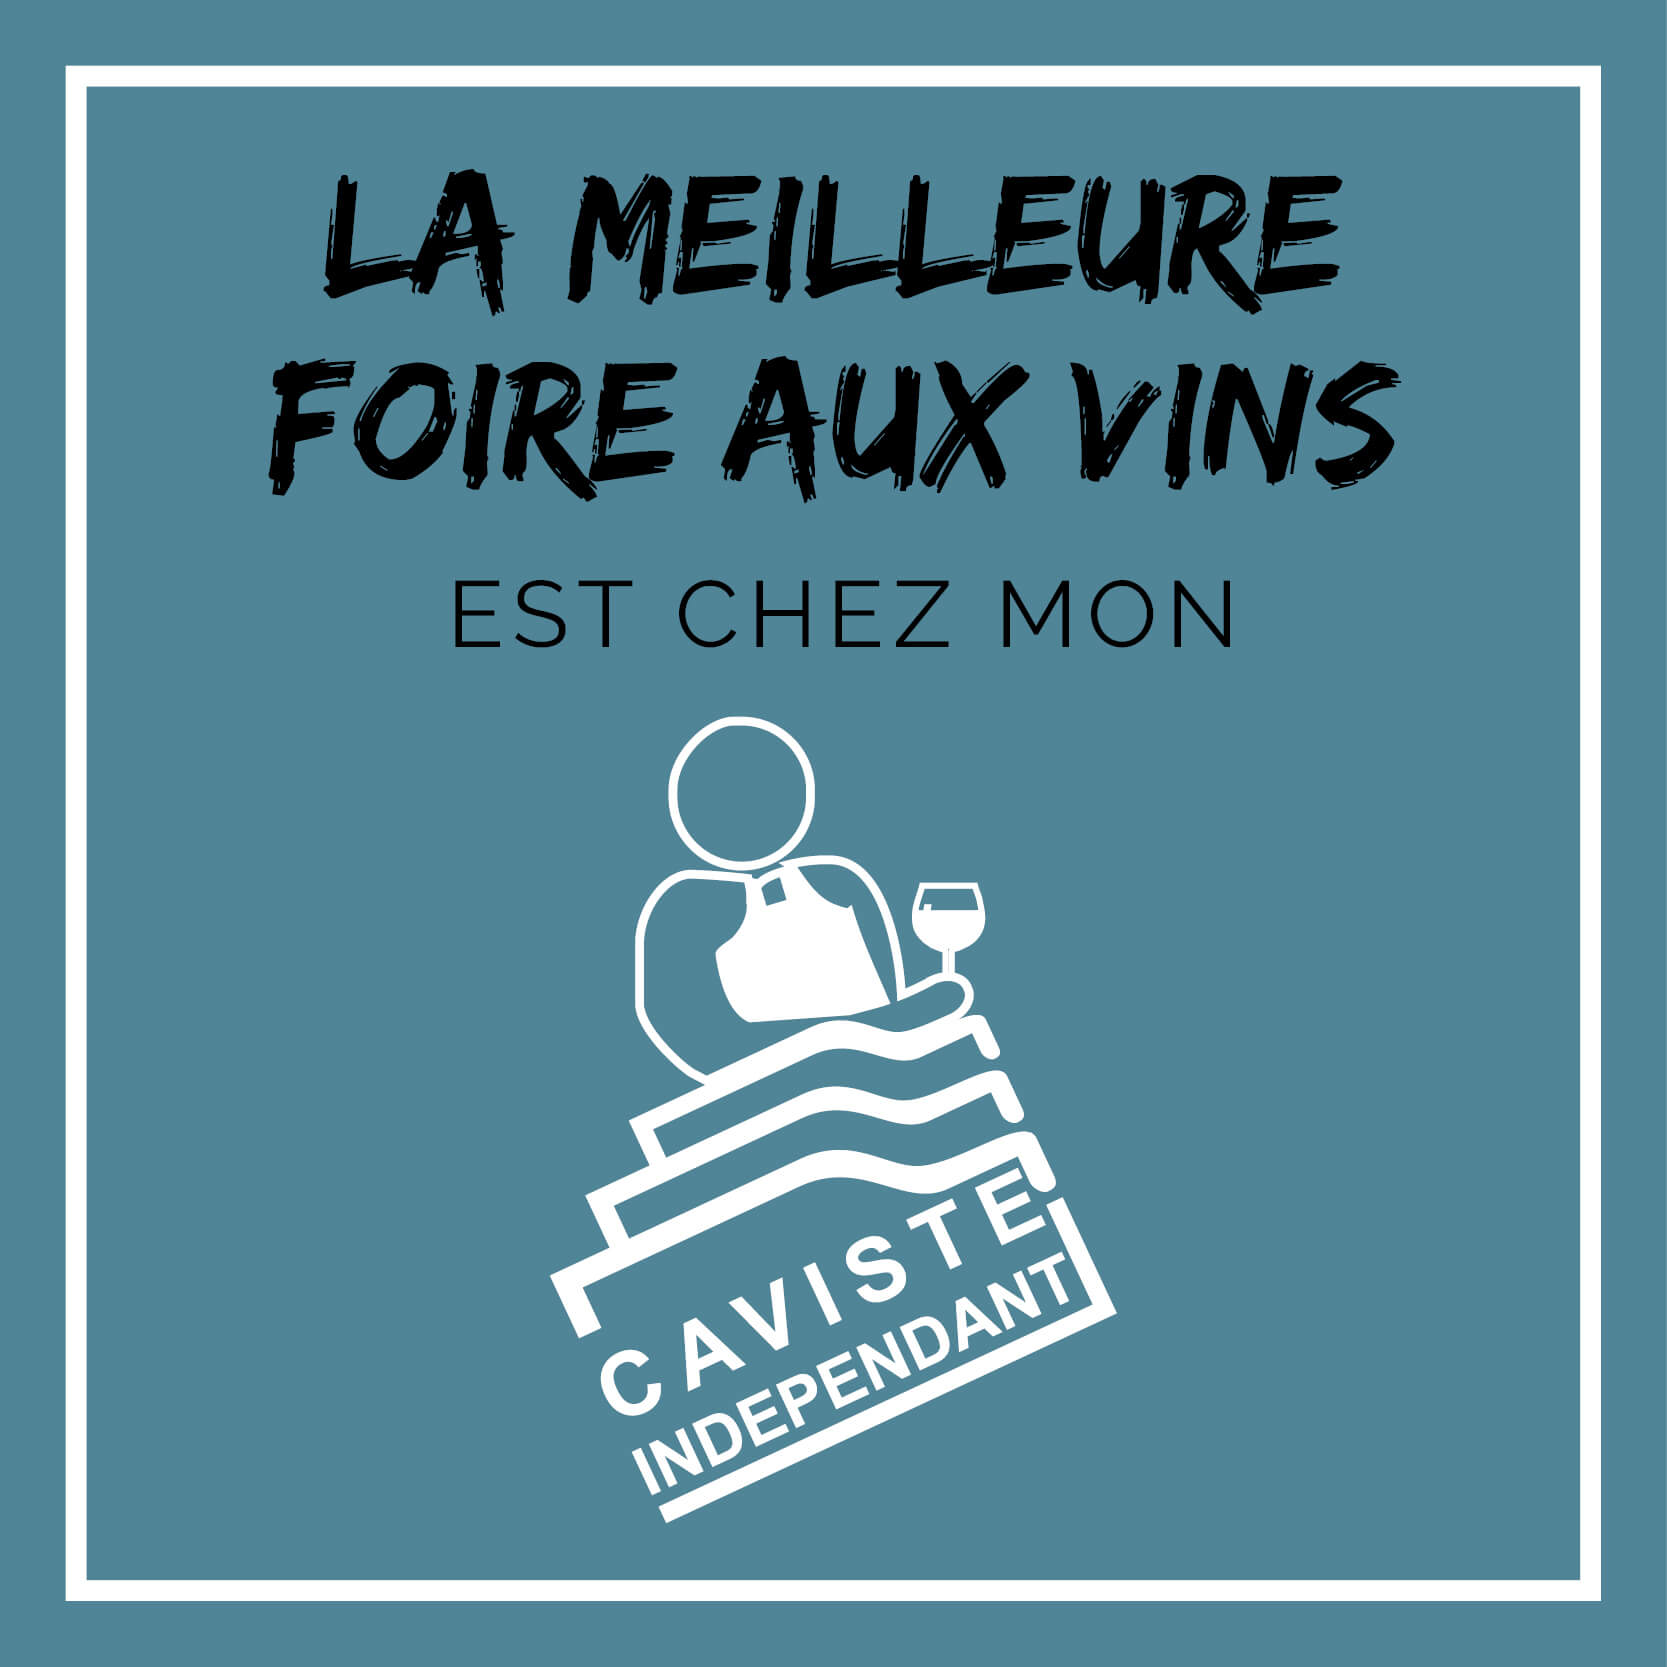 Foire-aux-vins-caviste-independant-heritage13